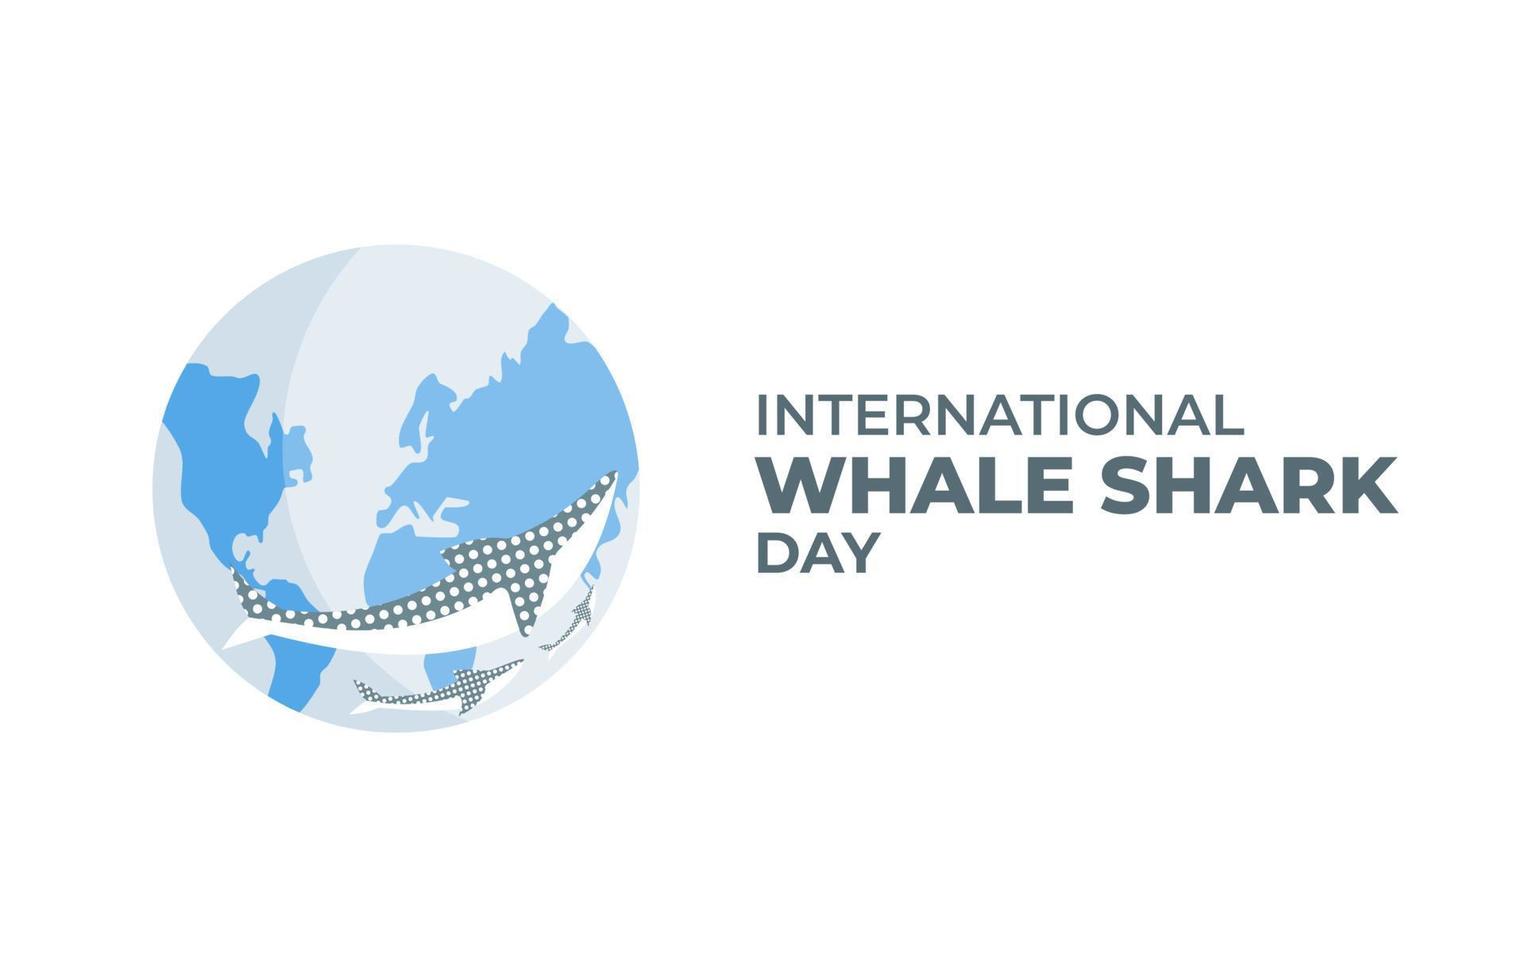 el fondo del cartel del día internacional del tiburón ballena crea conciencia sobre su impacto en el ecosistema marino ilustración vectorial plana vector